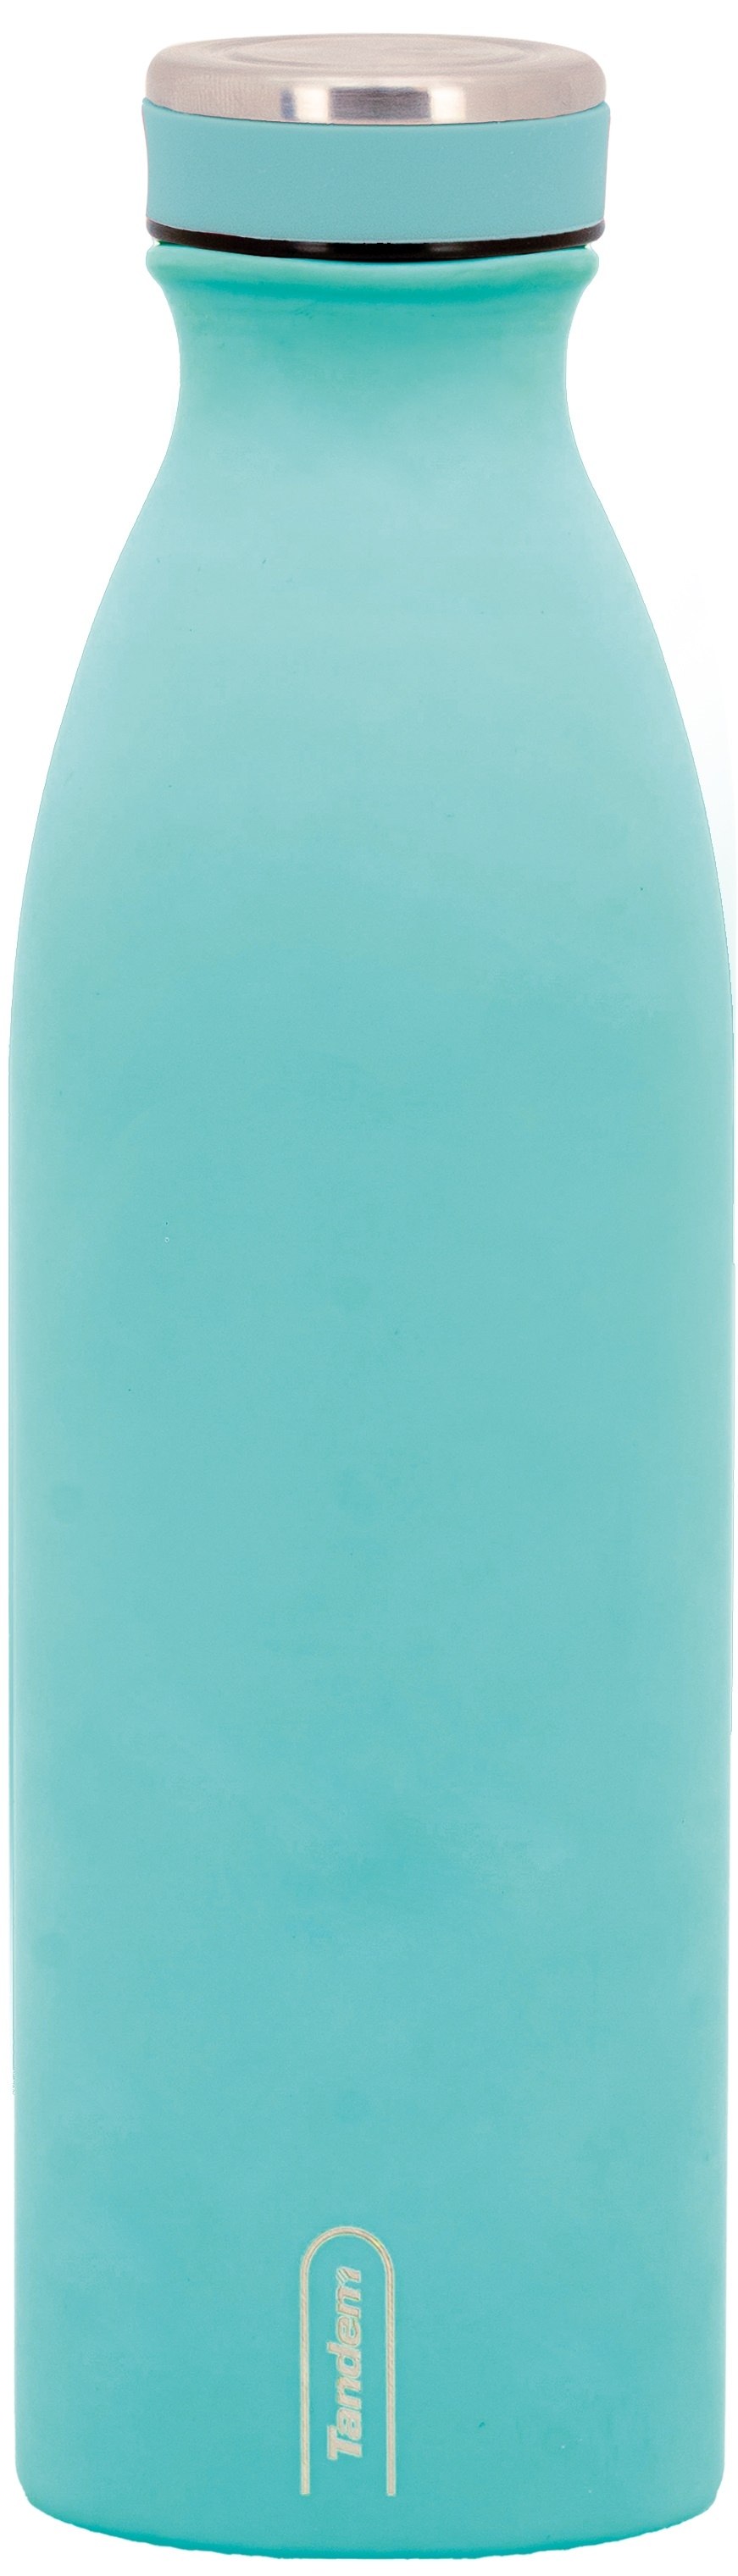 Μπουκάλι ισοθερμικό 500 ml Aquamarine